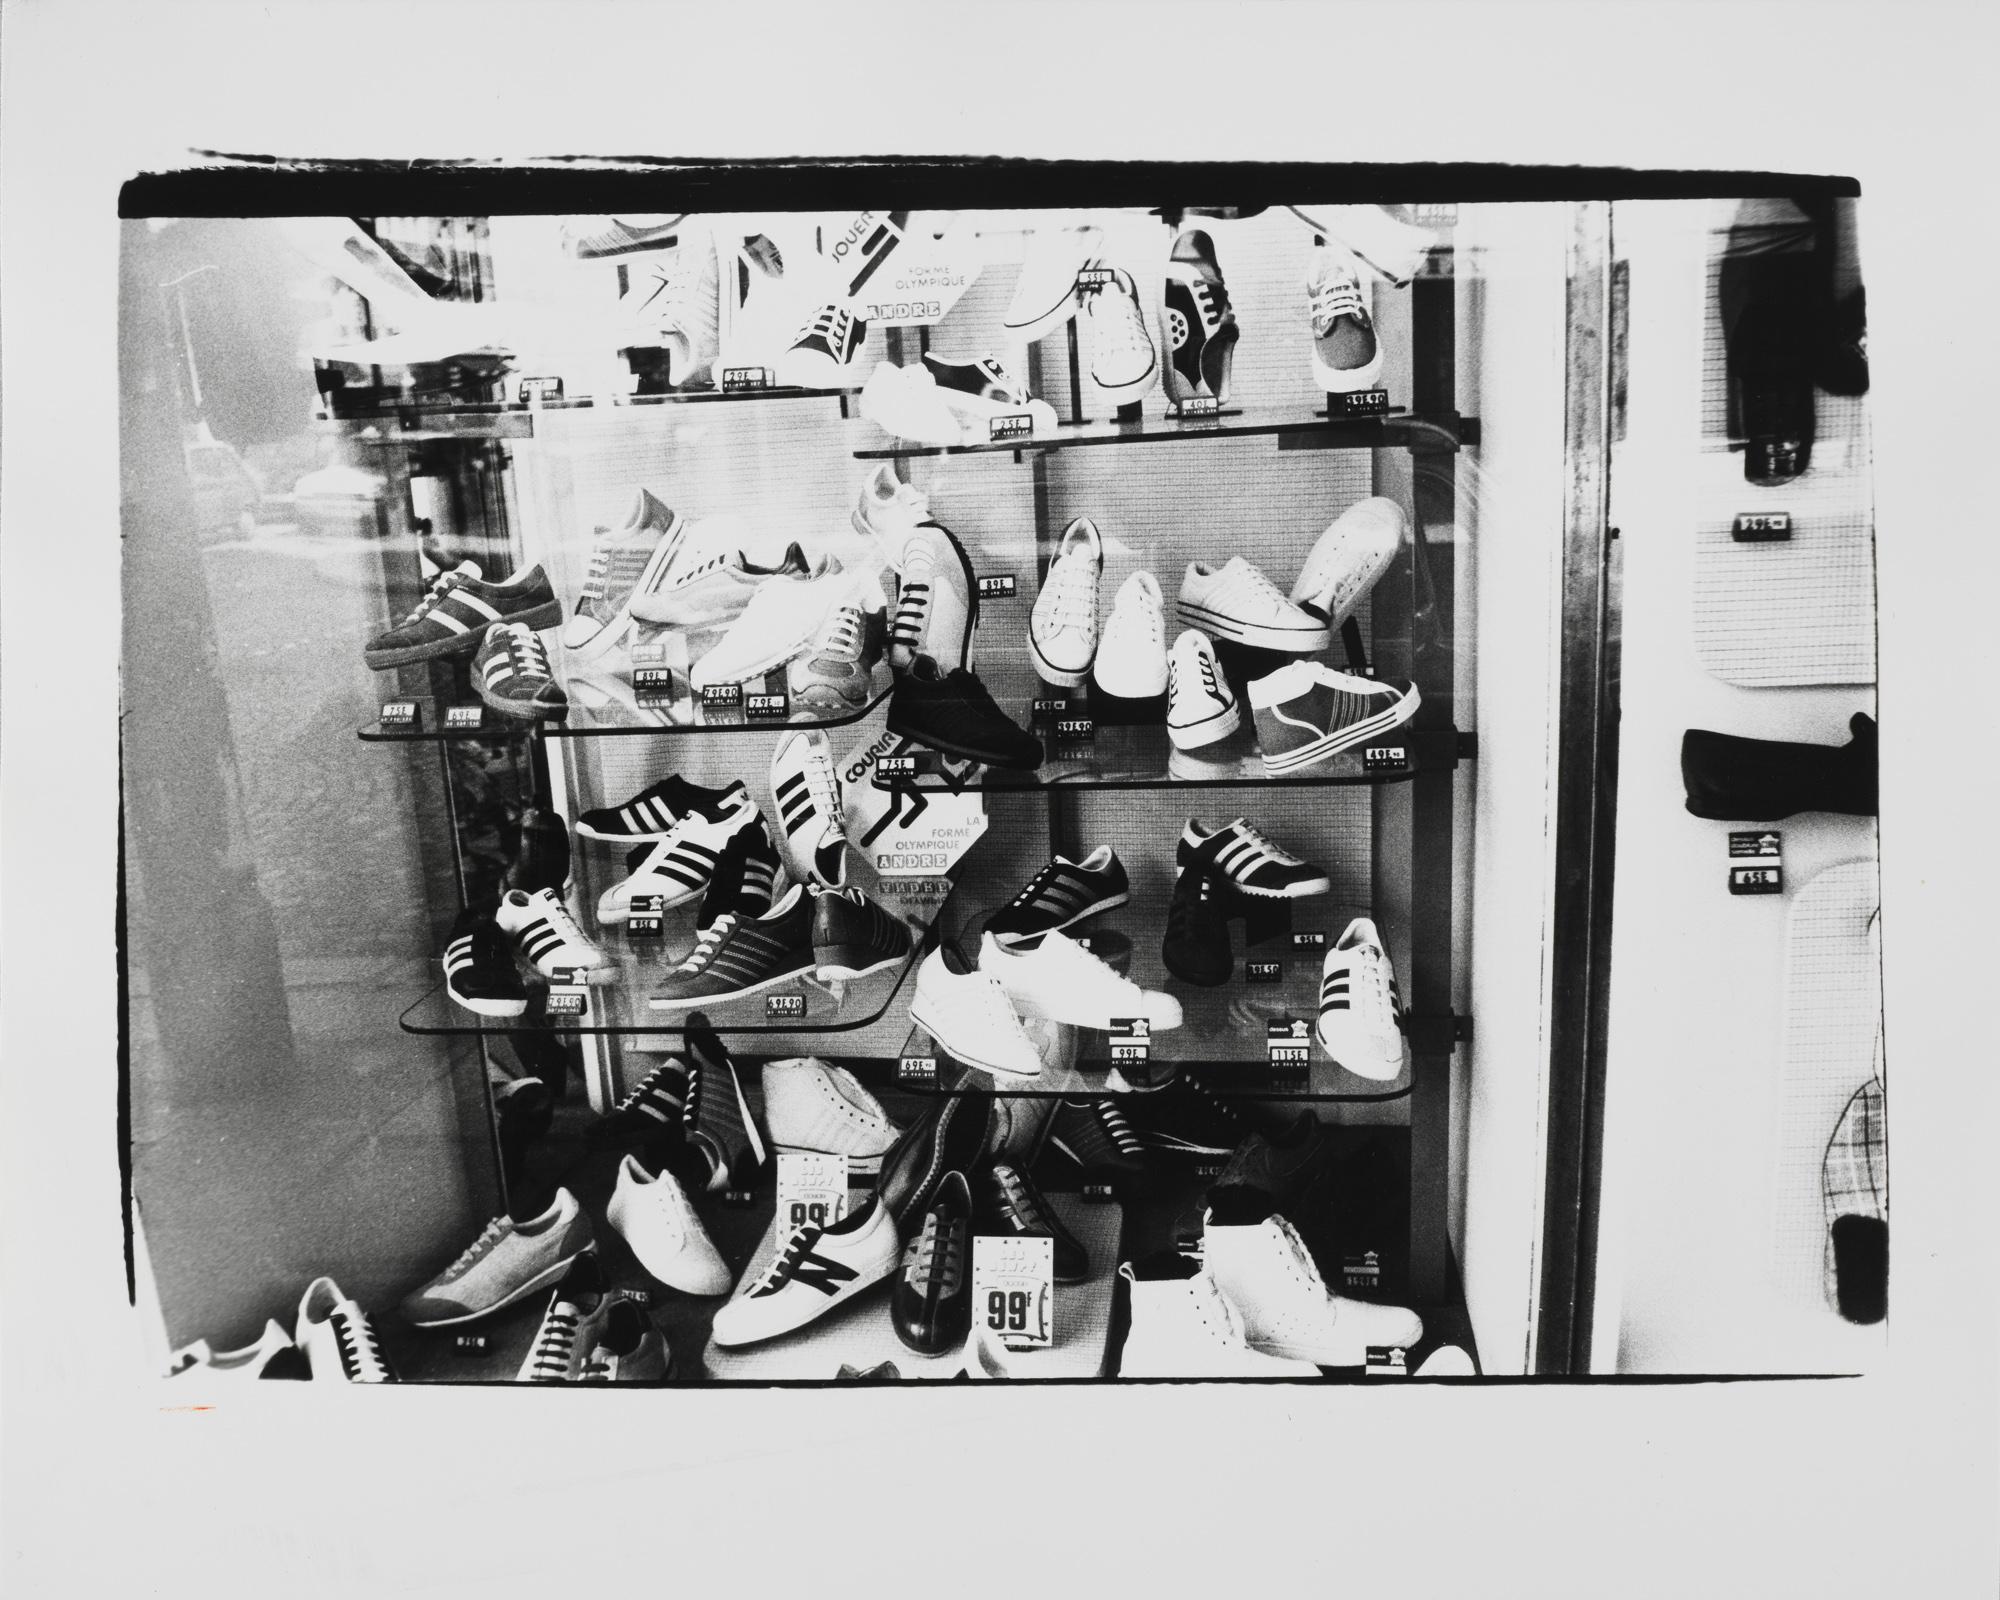 Gelatinesilberdruck von Schuhen von Andy Warhol